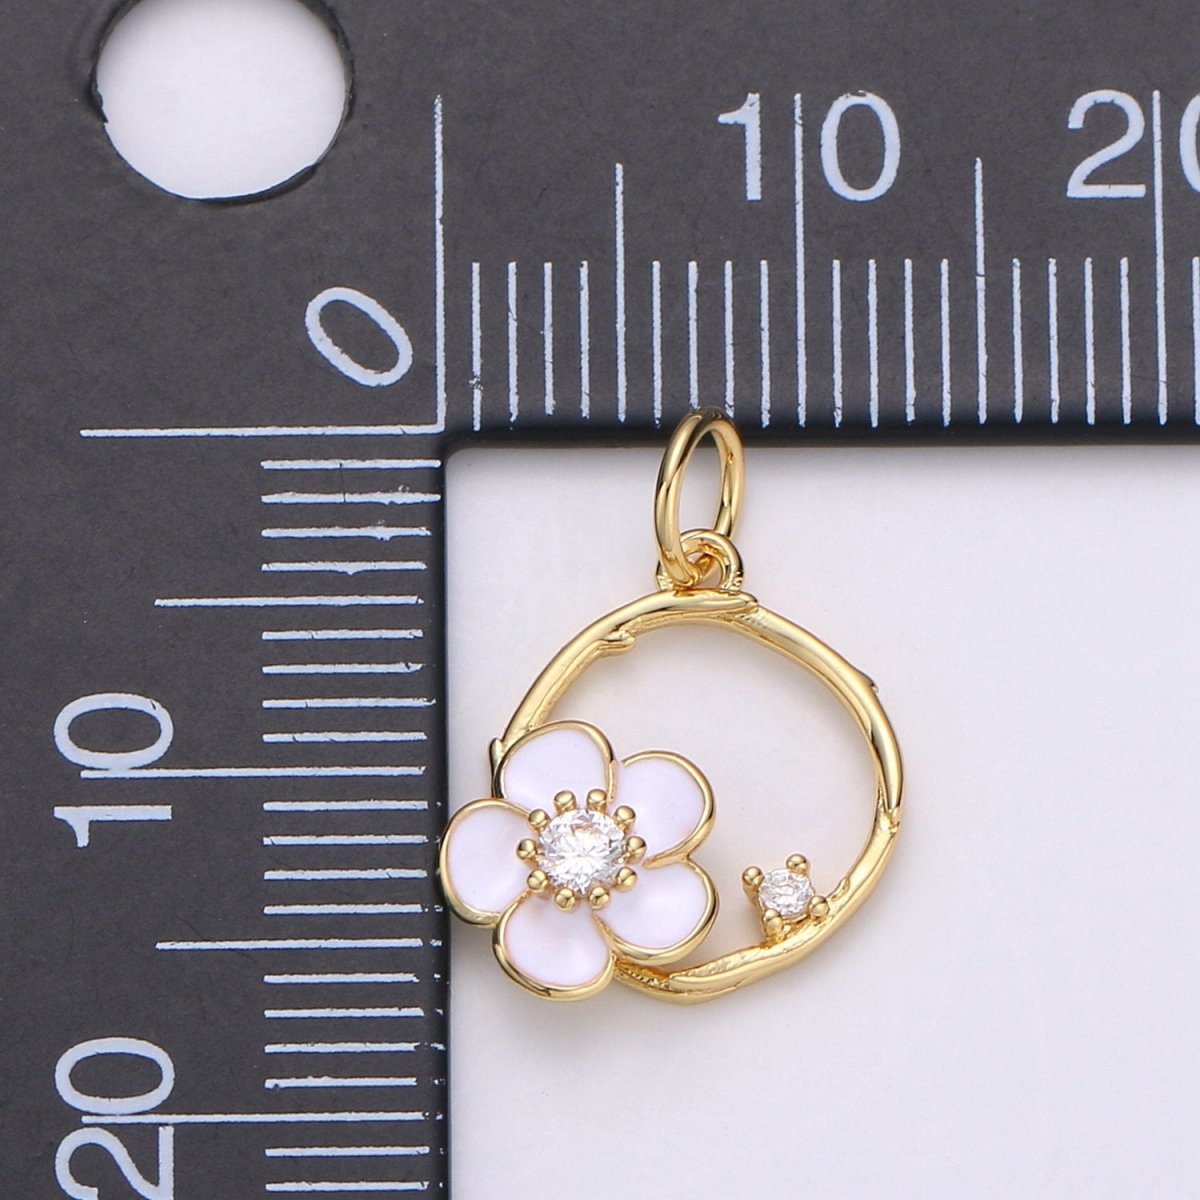 Tiny 14k Gold Filled White Flower Charm Clover Charm, CZ Gold Charm, Dainty Minimalist Jewelry Supply E-581 - DLUXCA